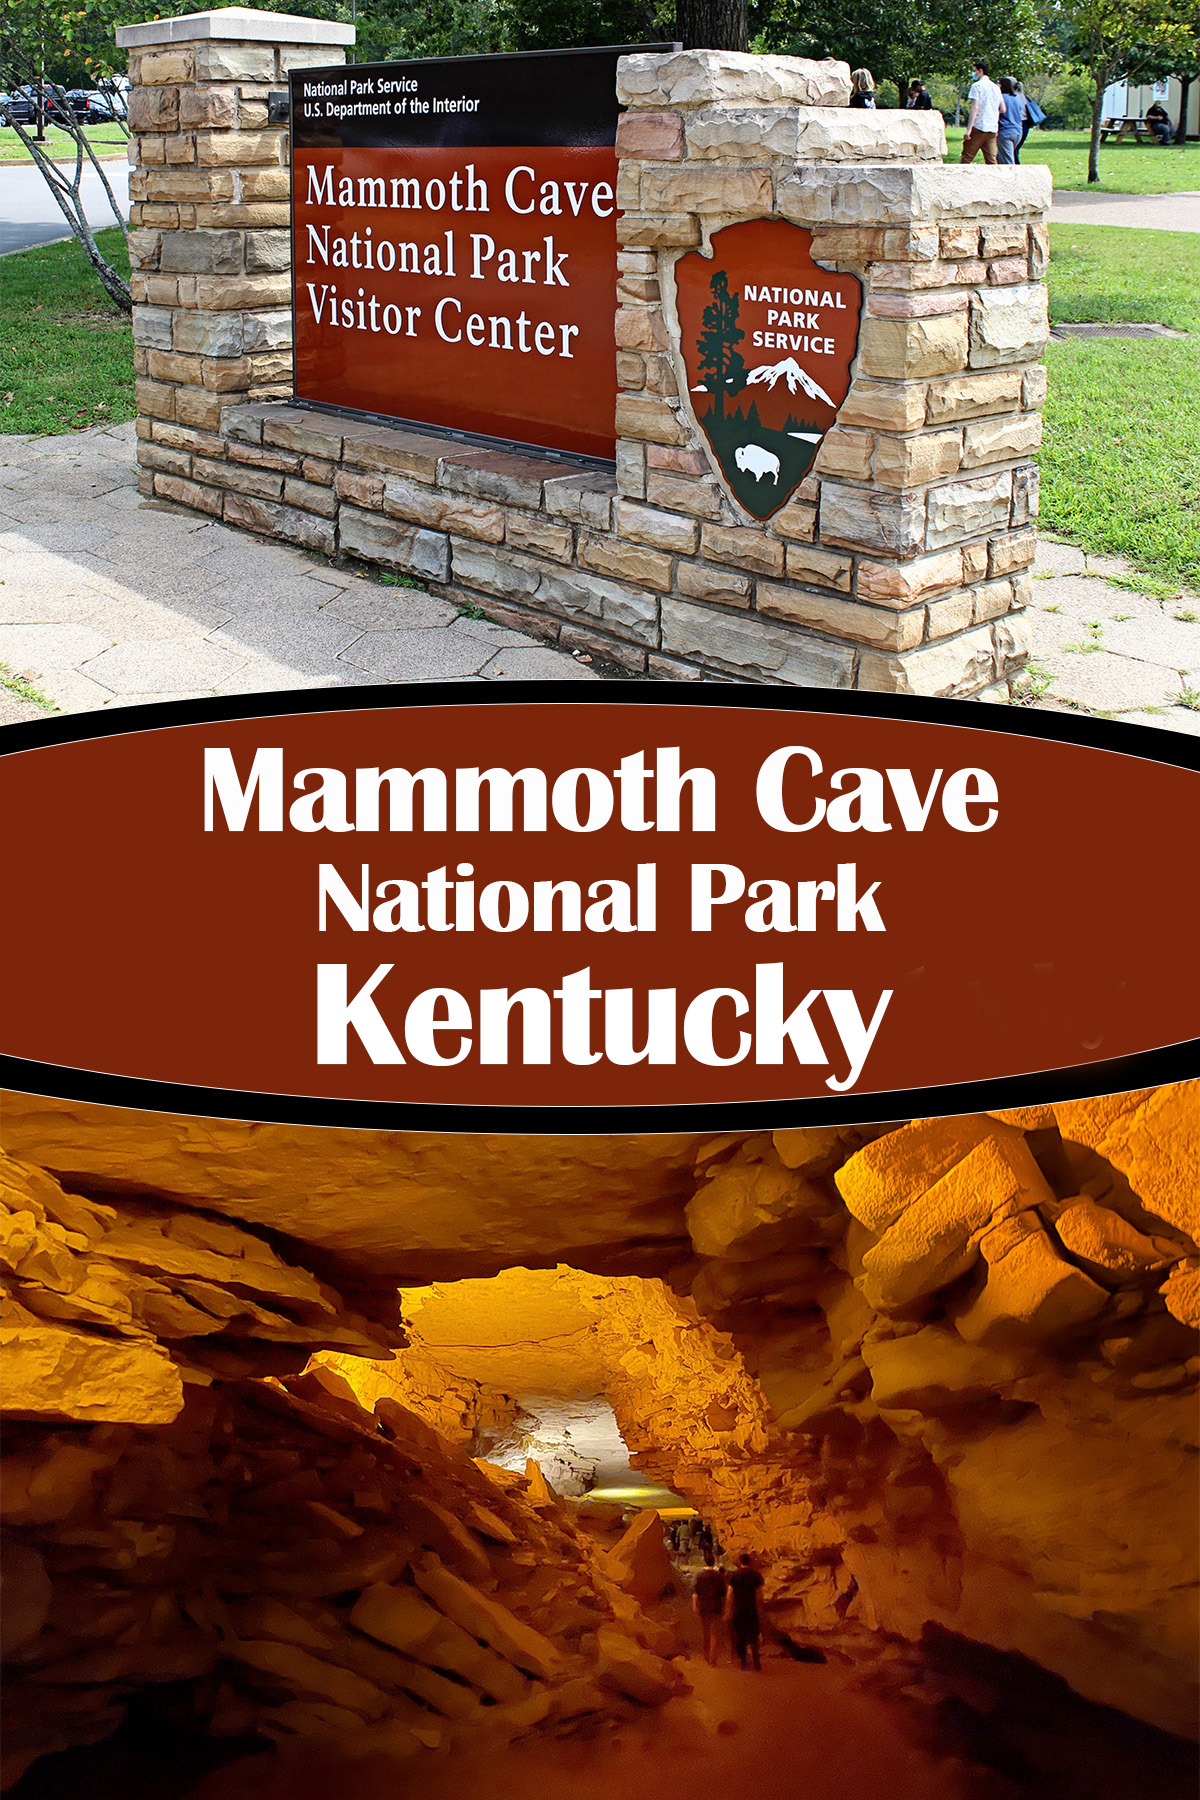 Mammoth Cave National Park near Bowling Green, Kentucky